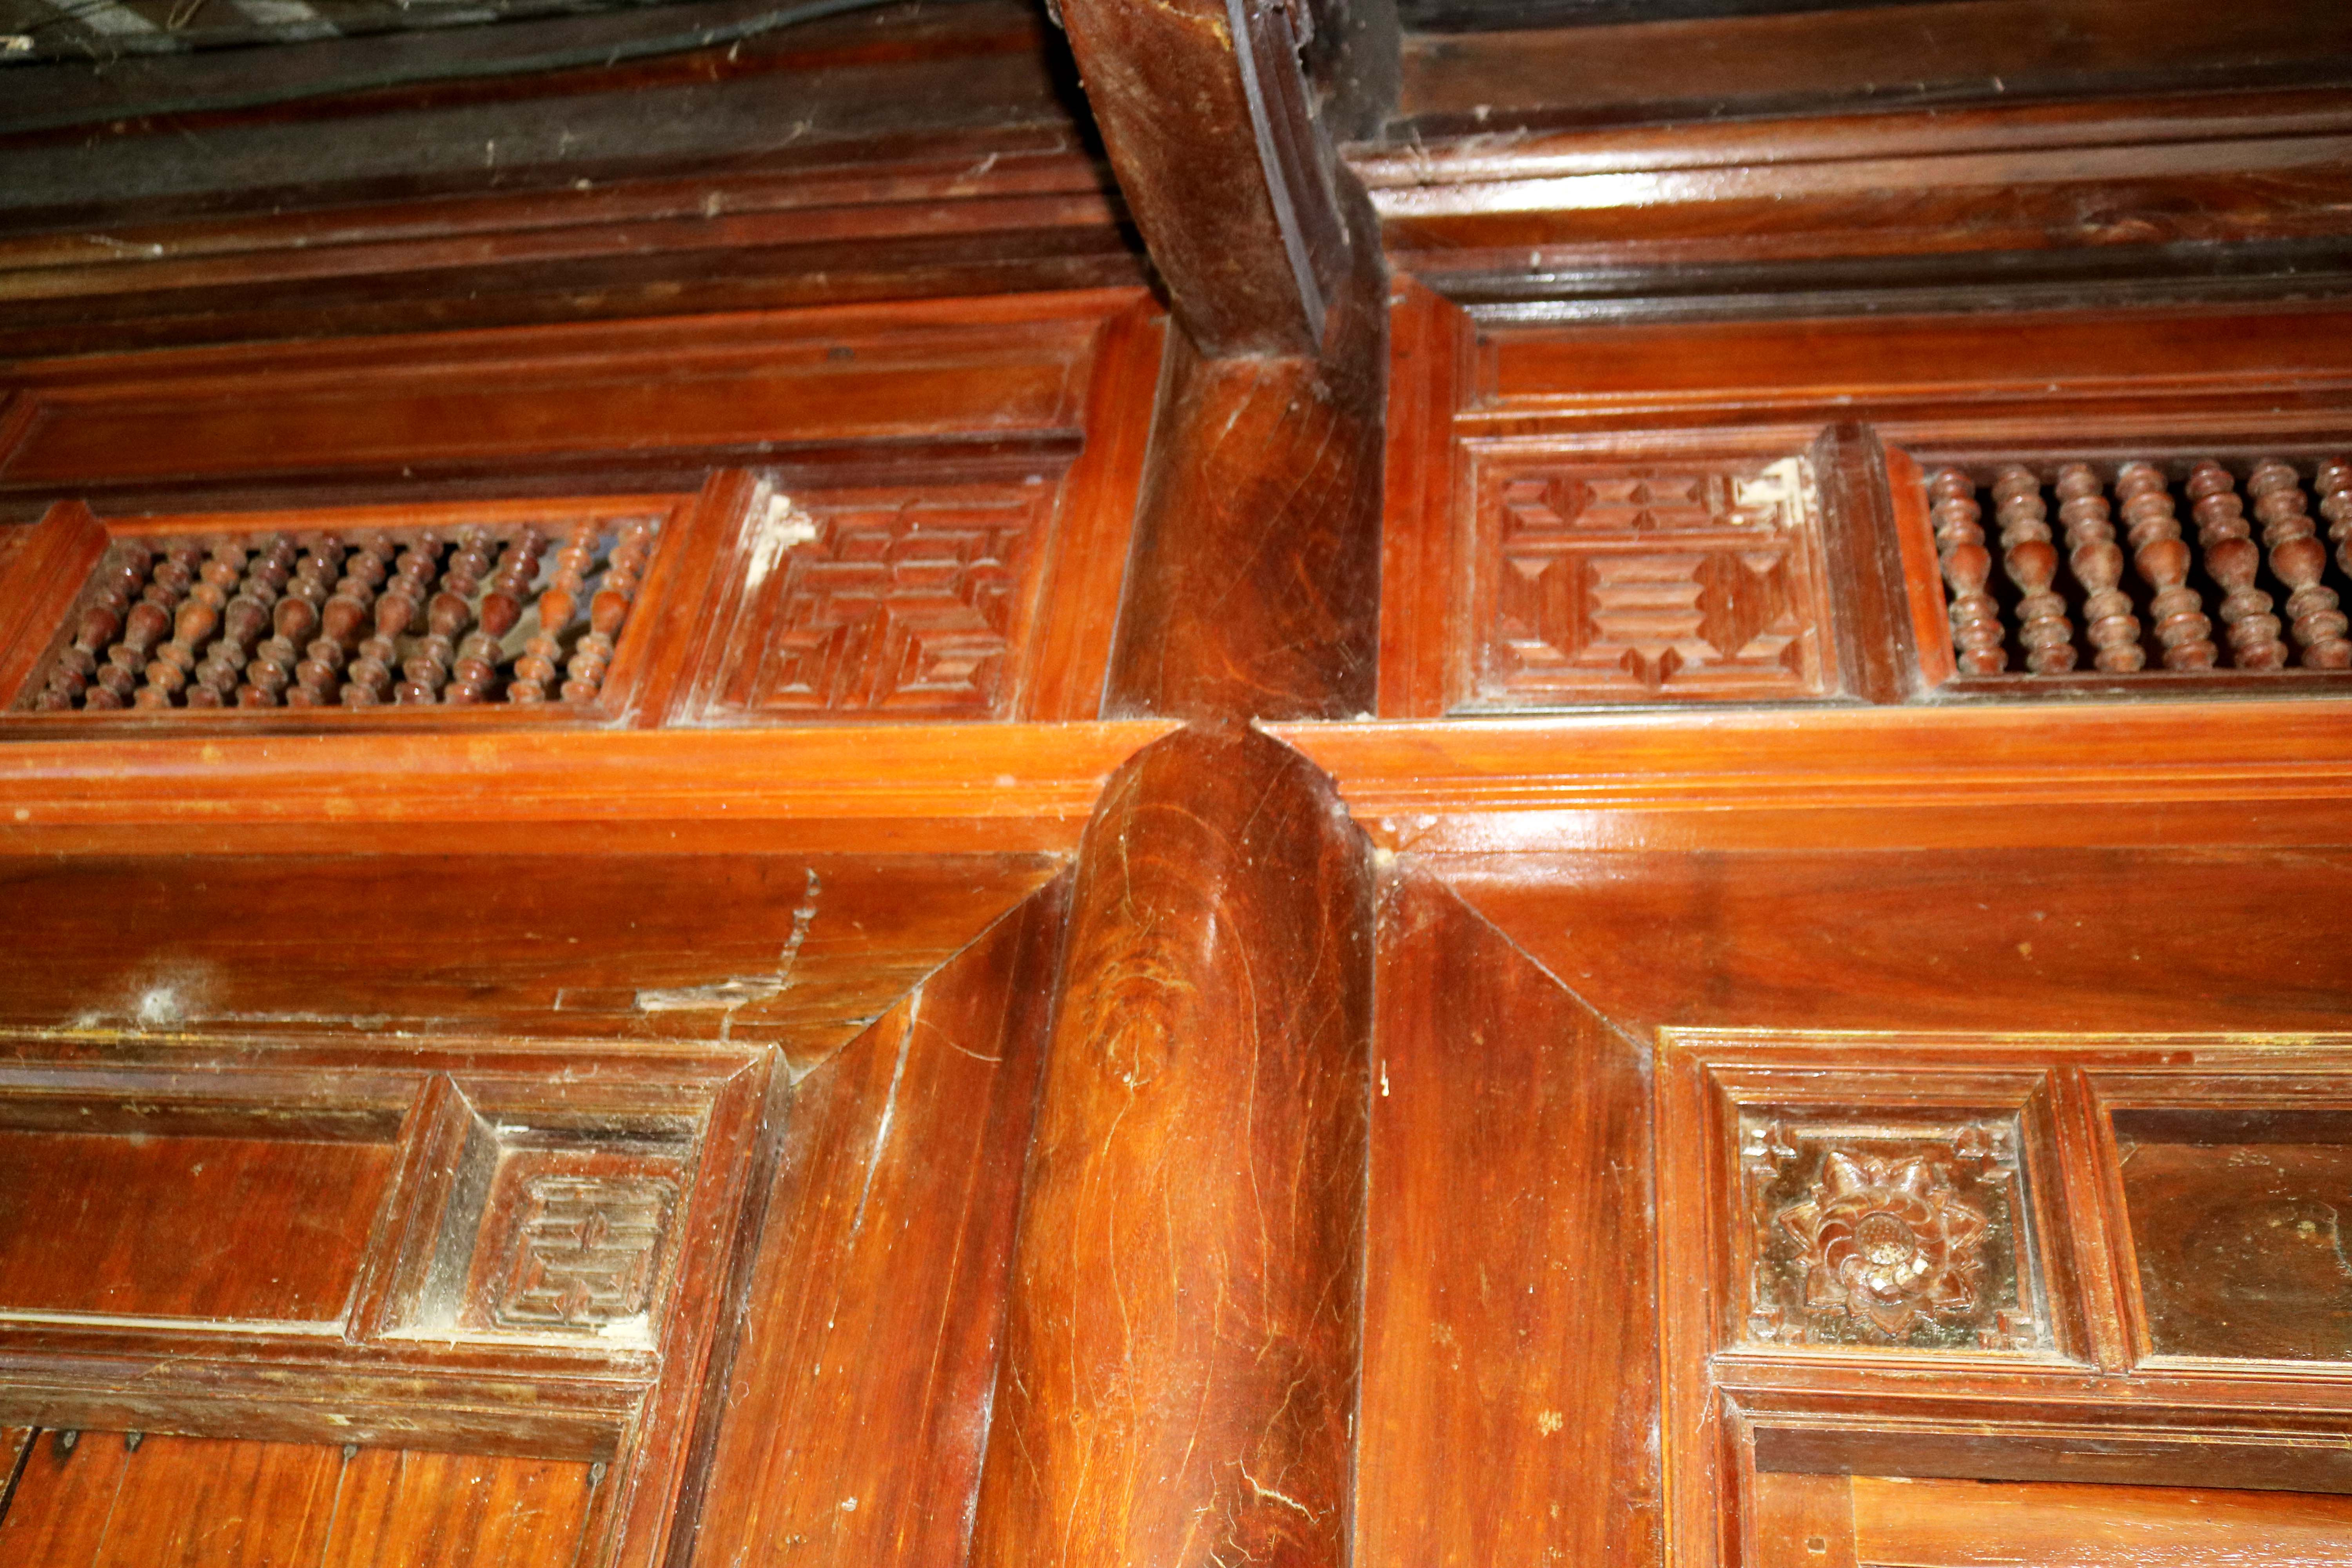 3.Cũng như các nhà cổ ở Yên Thành, Thanh Chương… các nhà cổ ở đây chủ yếu được làm từ các loại gỗ lim, mít, dổi… qua thời gian, vẫn còn vững chắc, sáng đẹp.